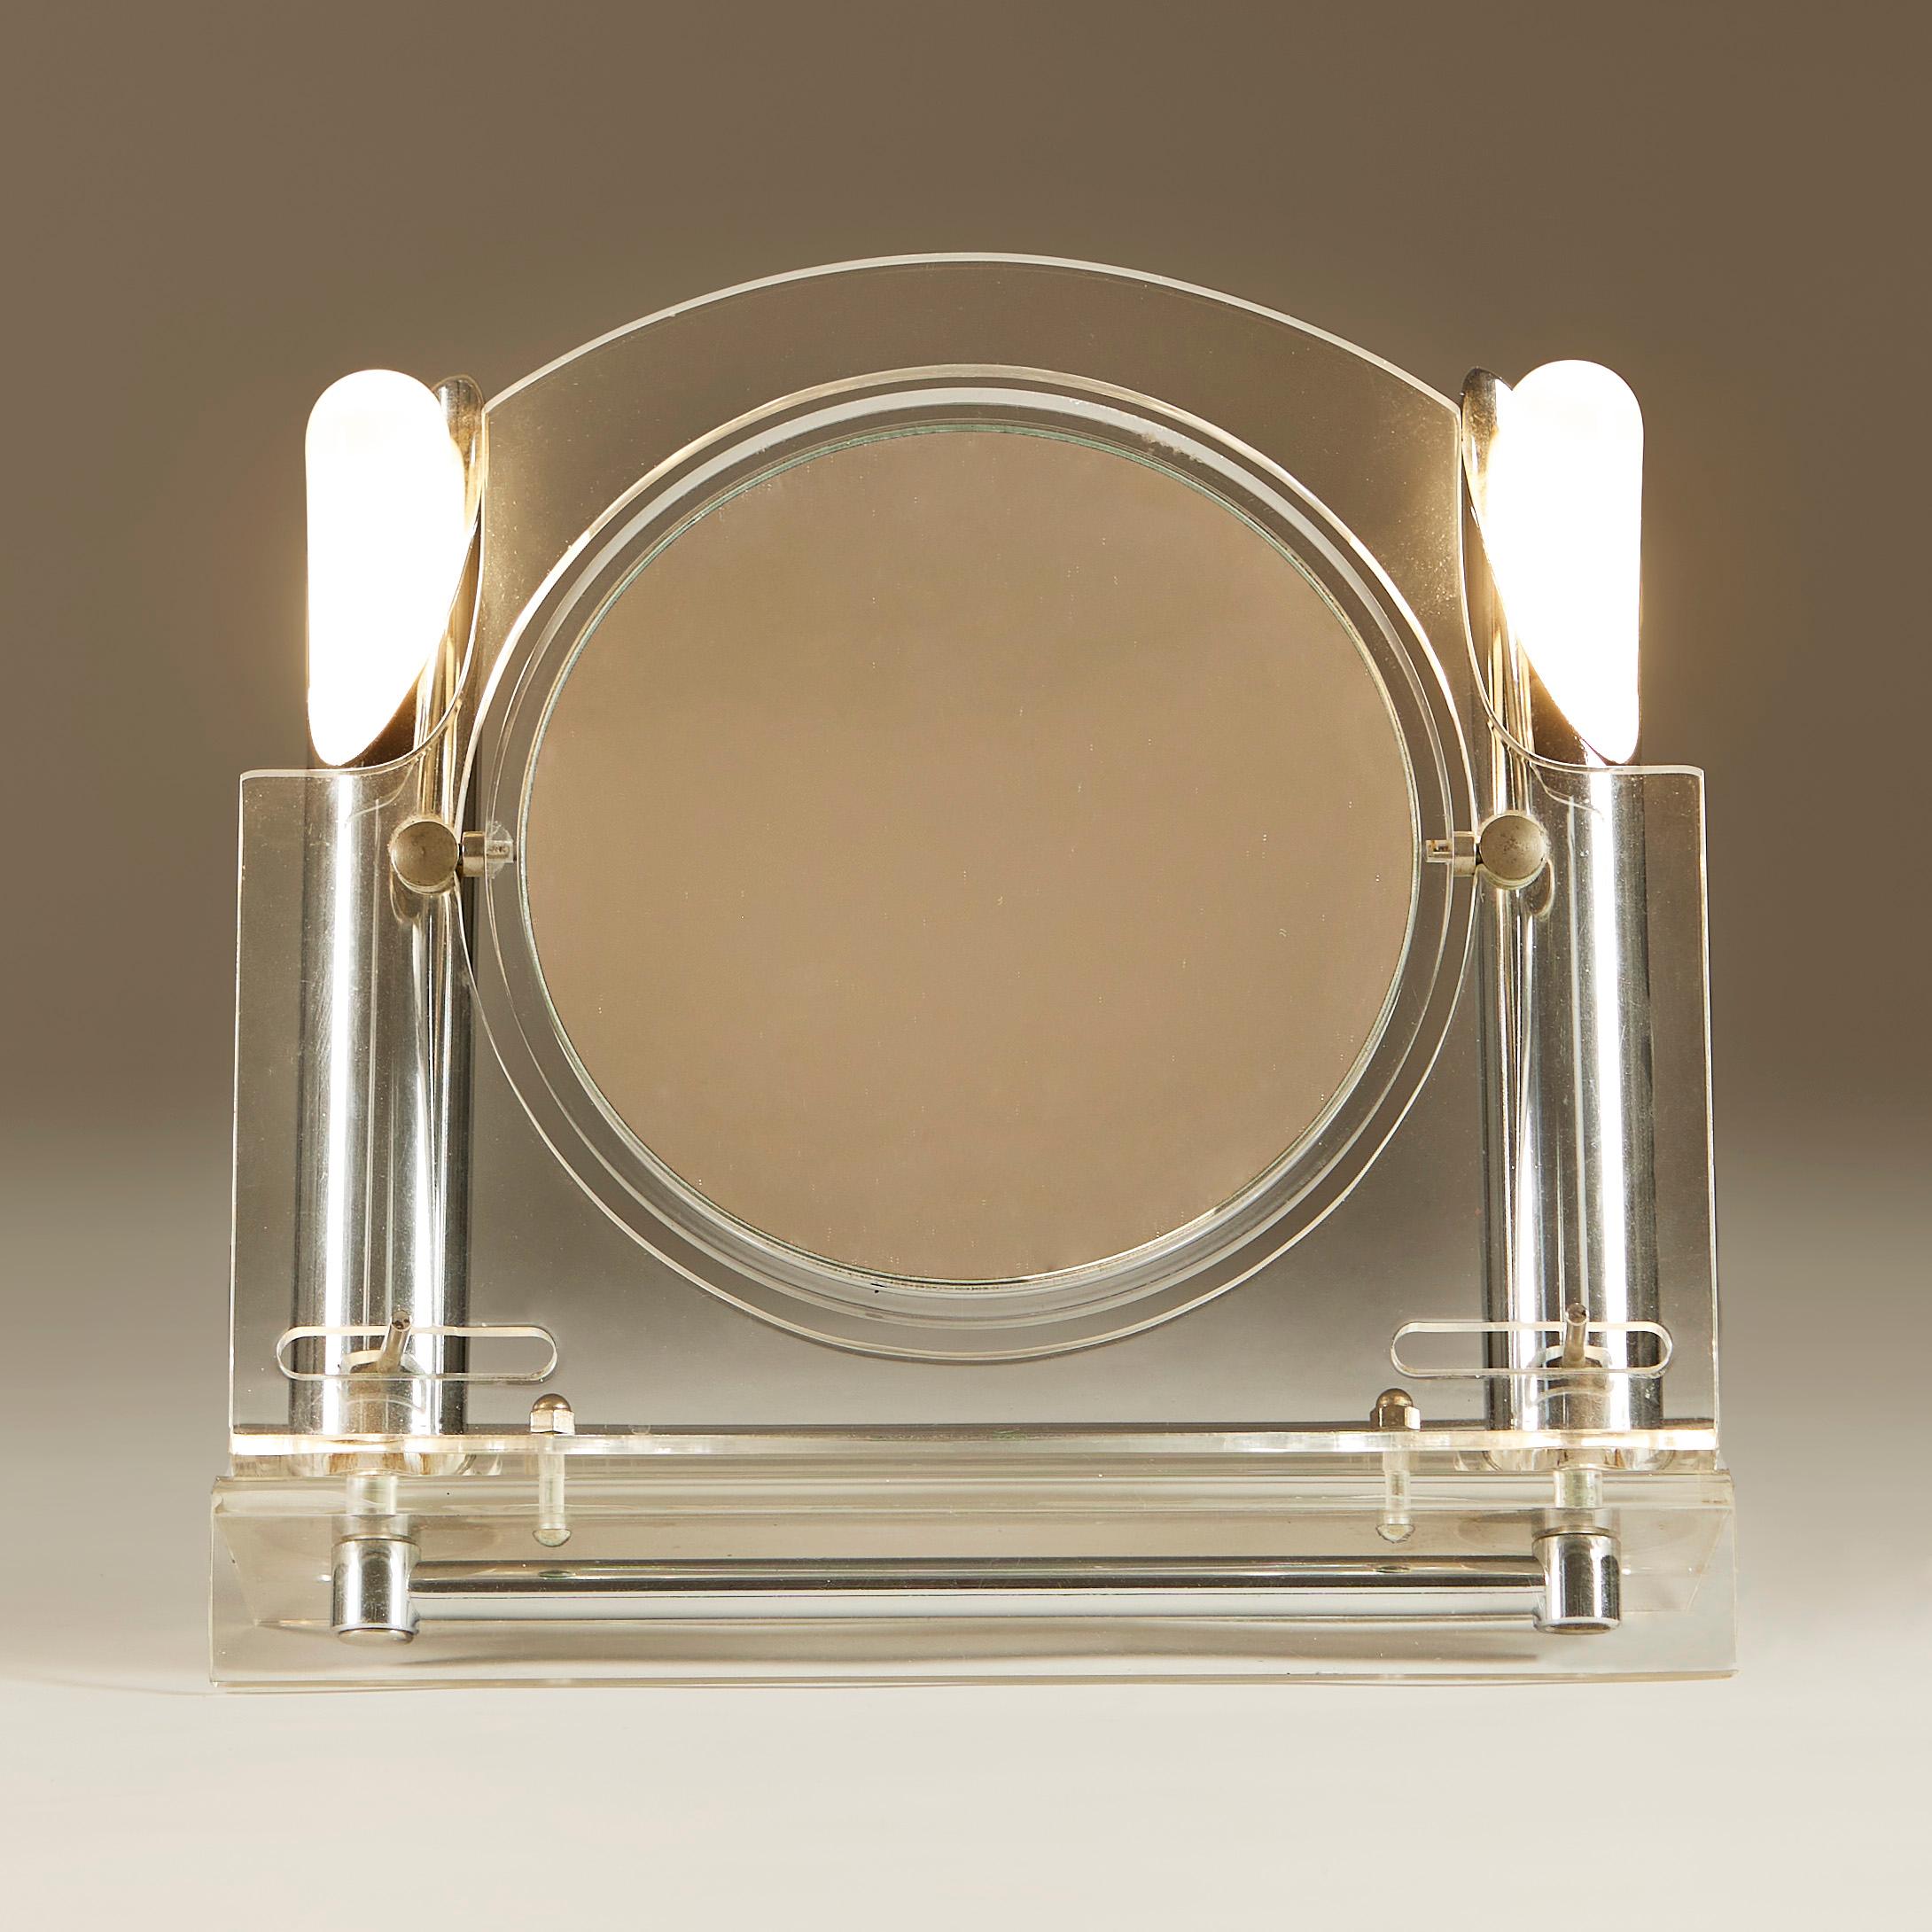 Ein Hauch von Glamour. Beidseitig verstellbarer Spiegel mit Rahmen und Sockel aus Lucite. Dekorative, verstellbare Chromrohre tragen die Glühbirnen auf beiden Seiten.